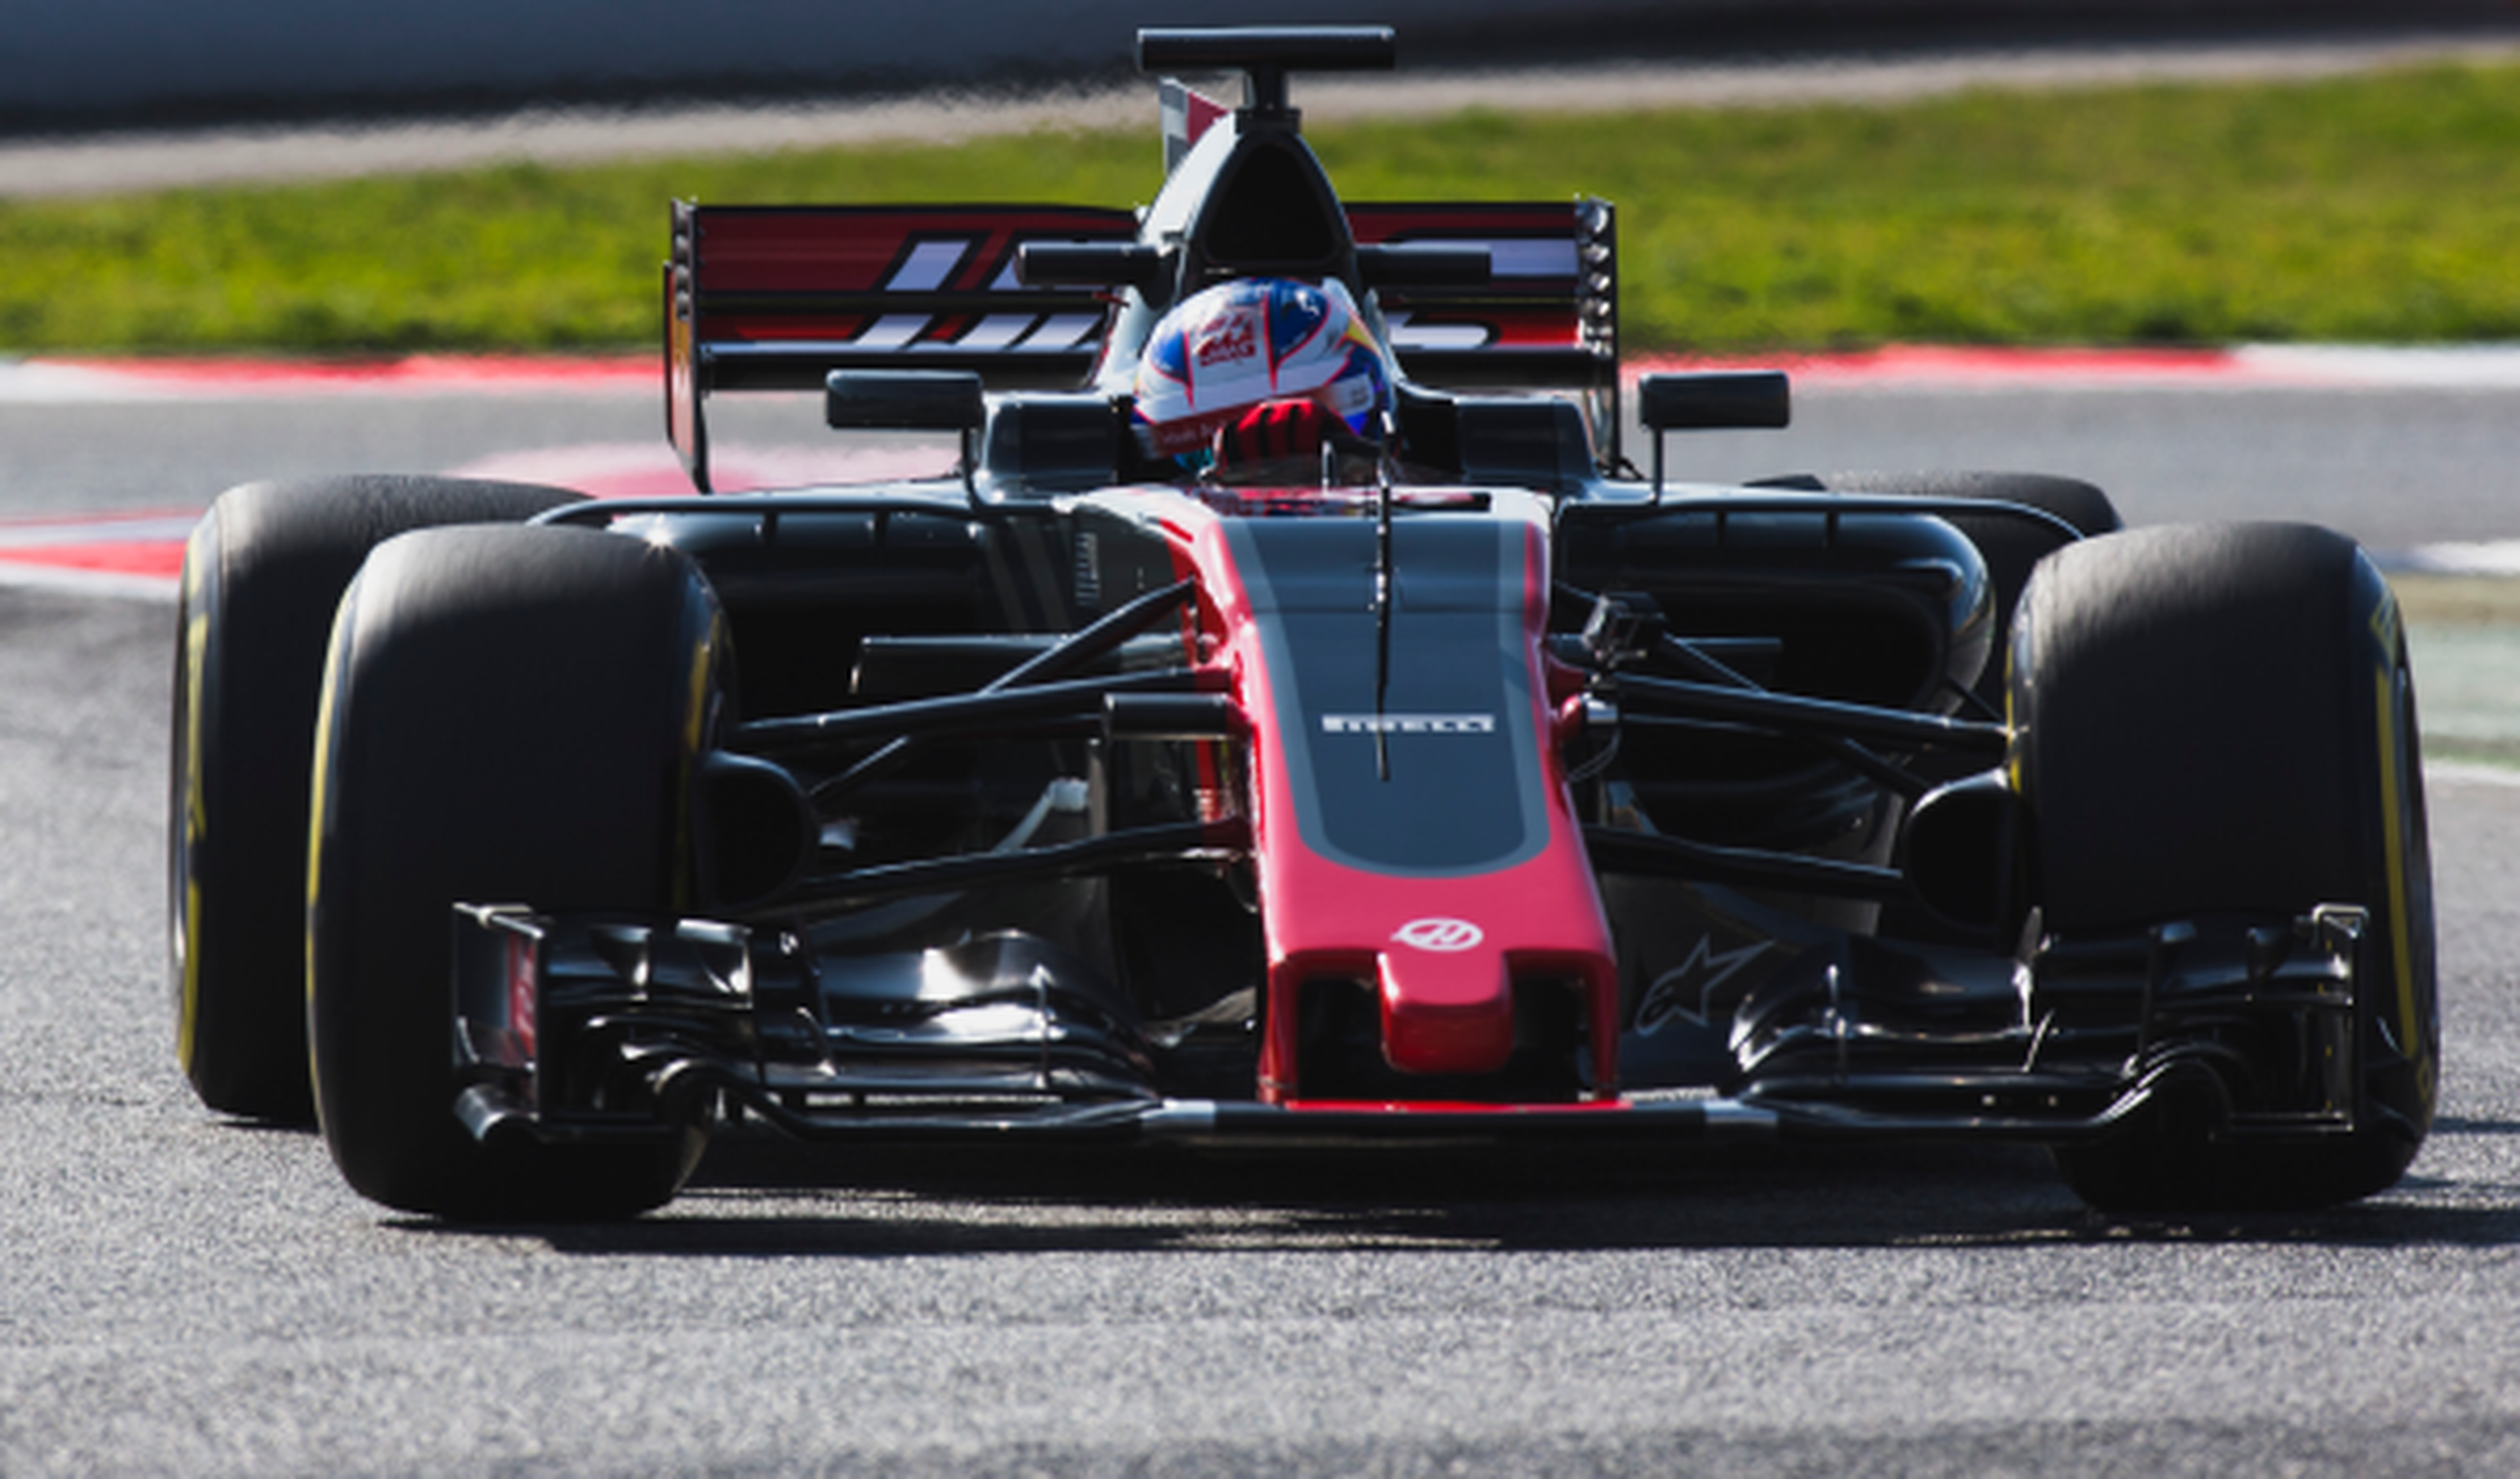 Fórmula 1. Haas VF17, ante un año clave